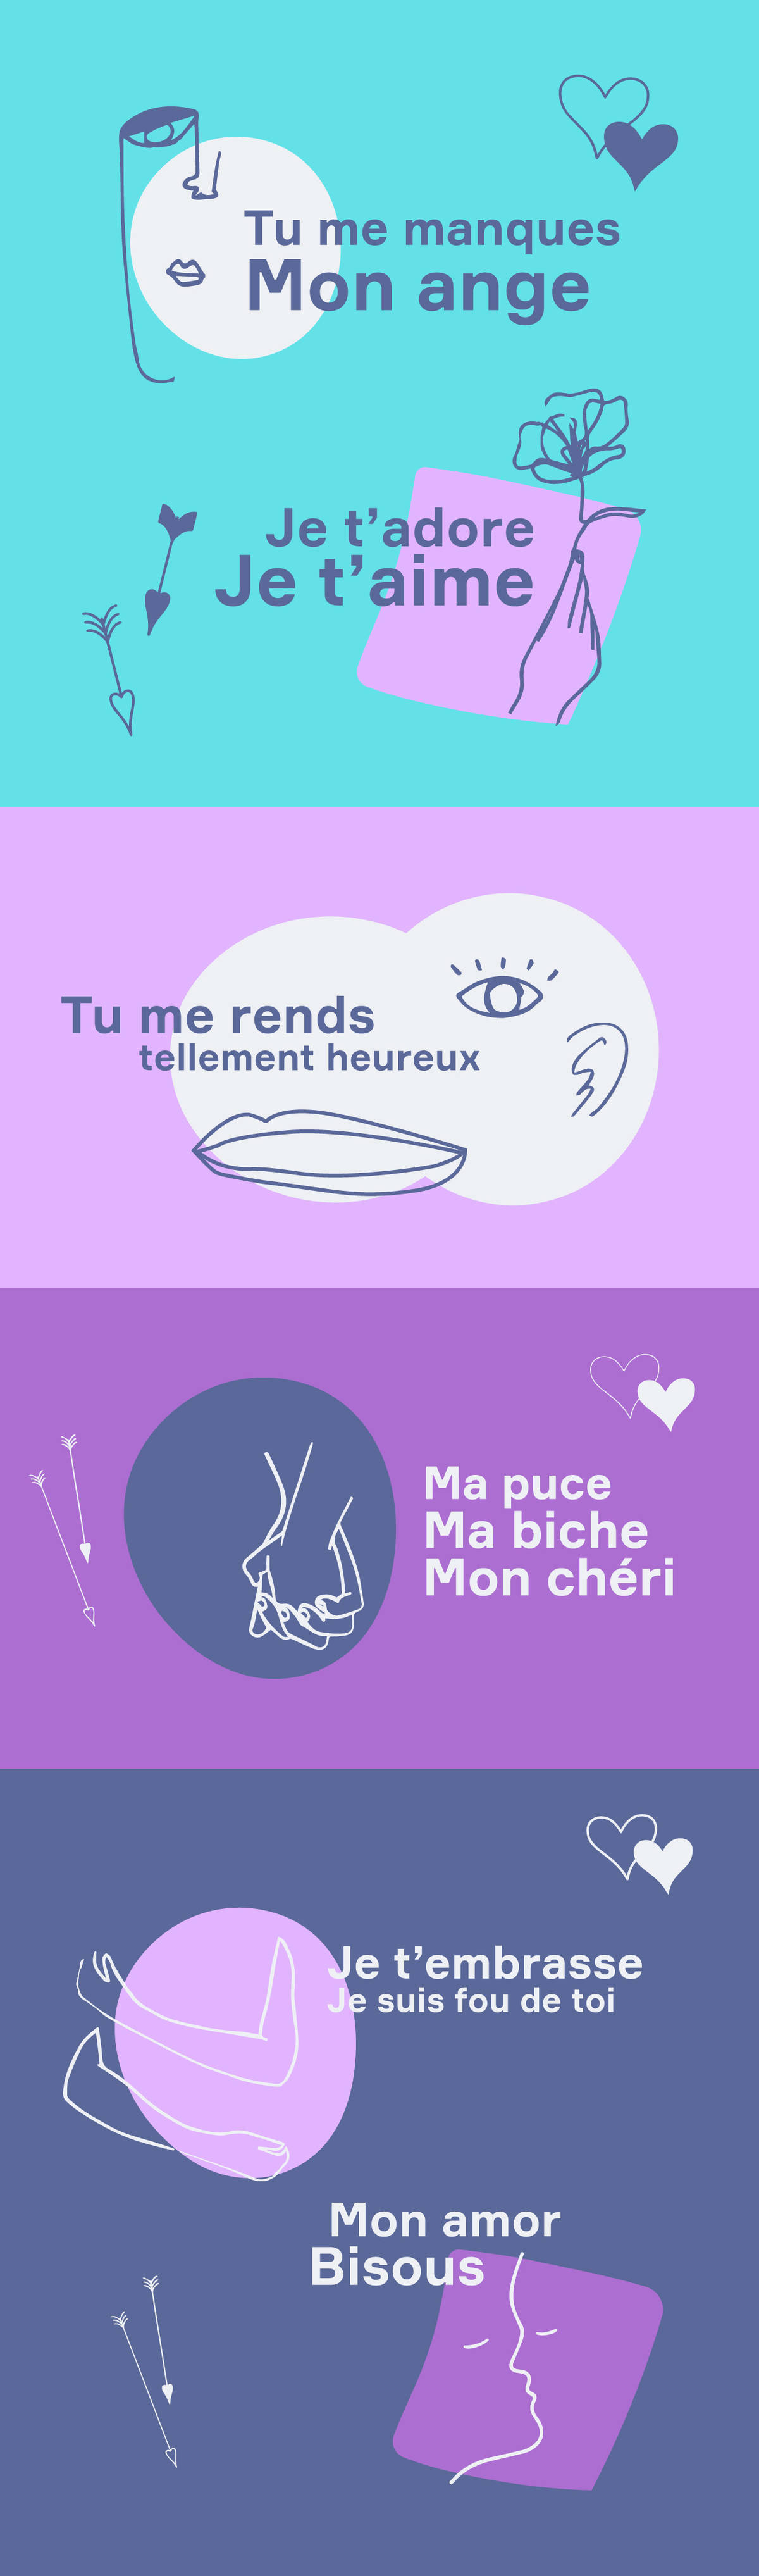 Romantic French Phrases